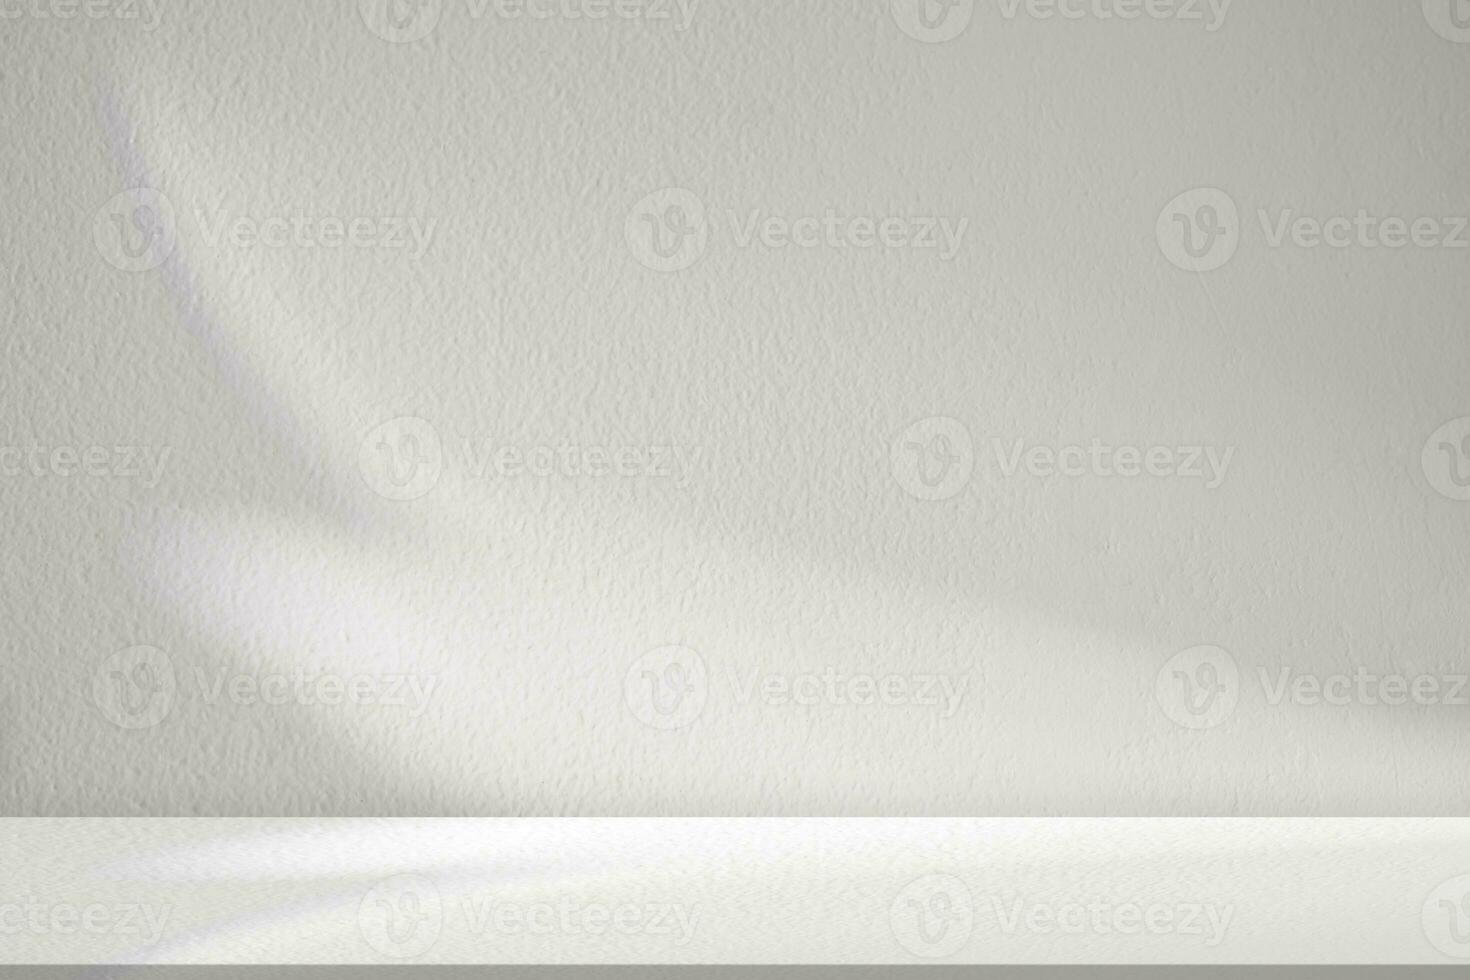 Studio Hintergrund, Blätter Schatten mit Sonnenstrahl Betrachtung auf grau Beton Mauer Hintergrund, leer Weiß Studio Zimmer mit abstrakt Licht auf Zement Boden, Kulisse Anzeige zum Produkt Präsentation foto